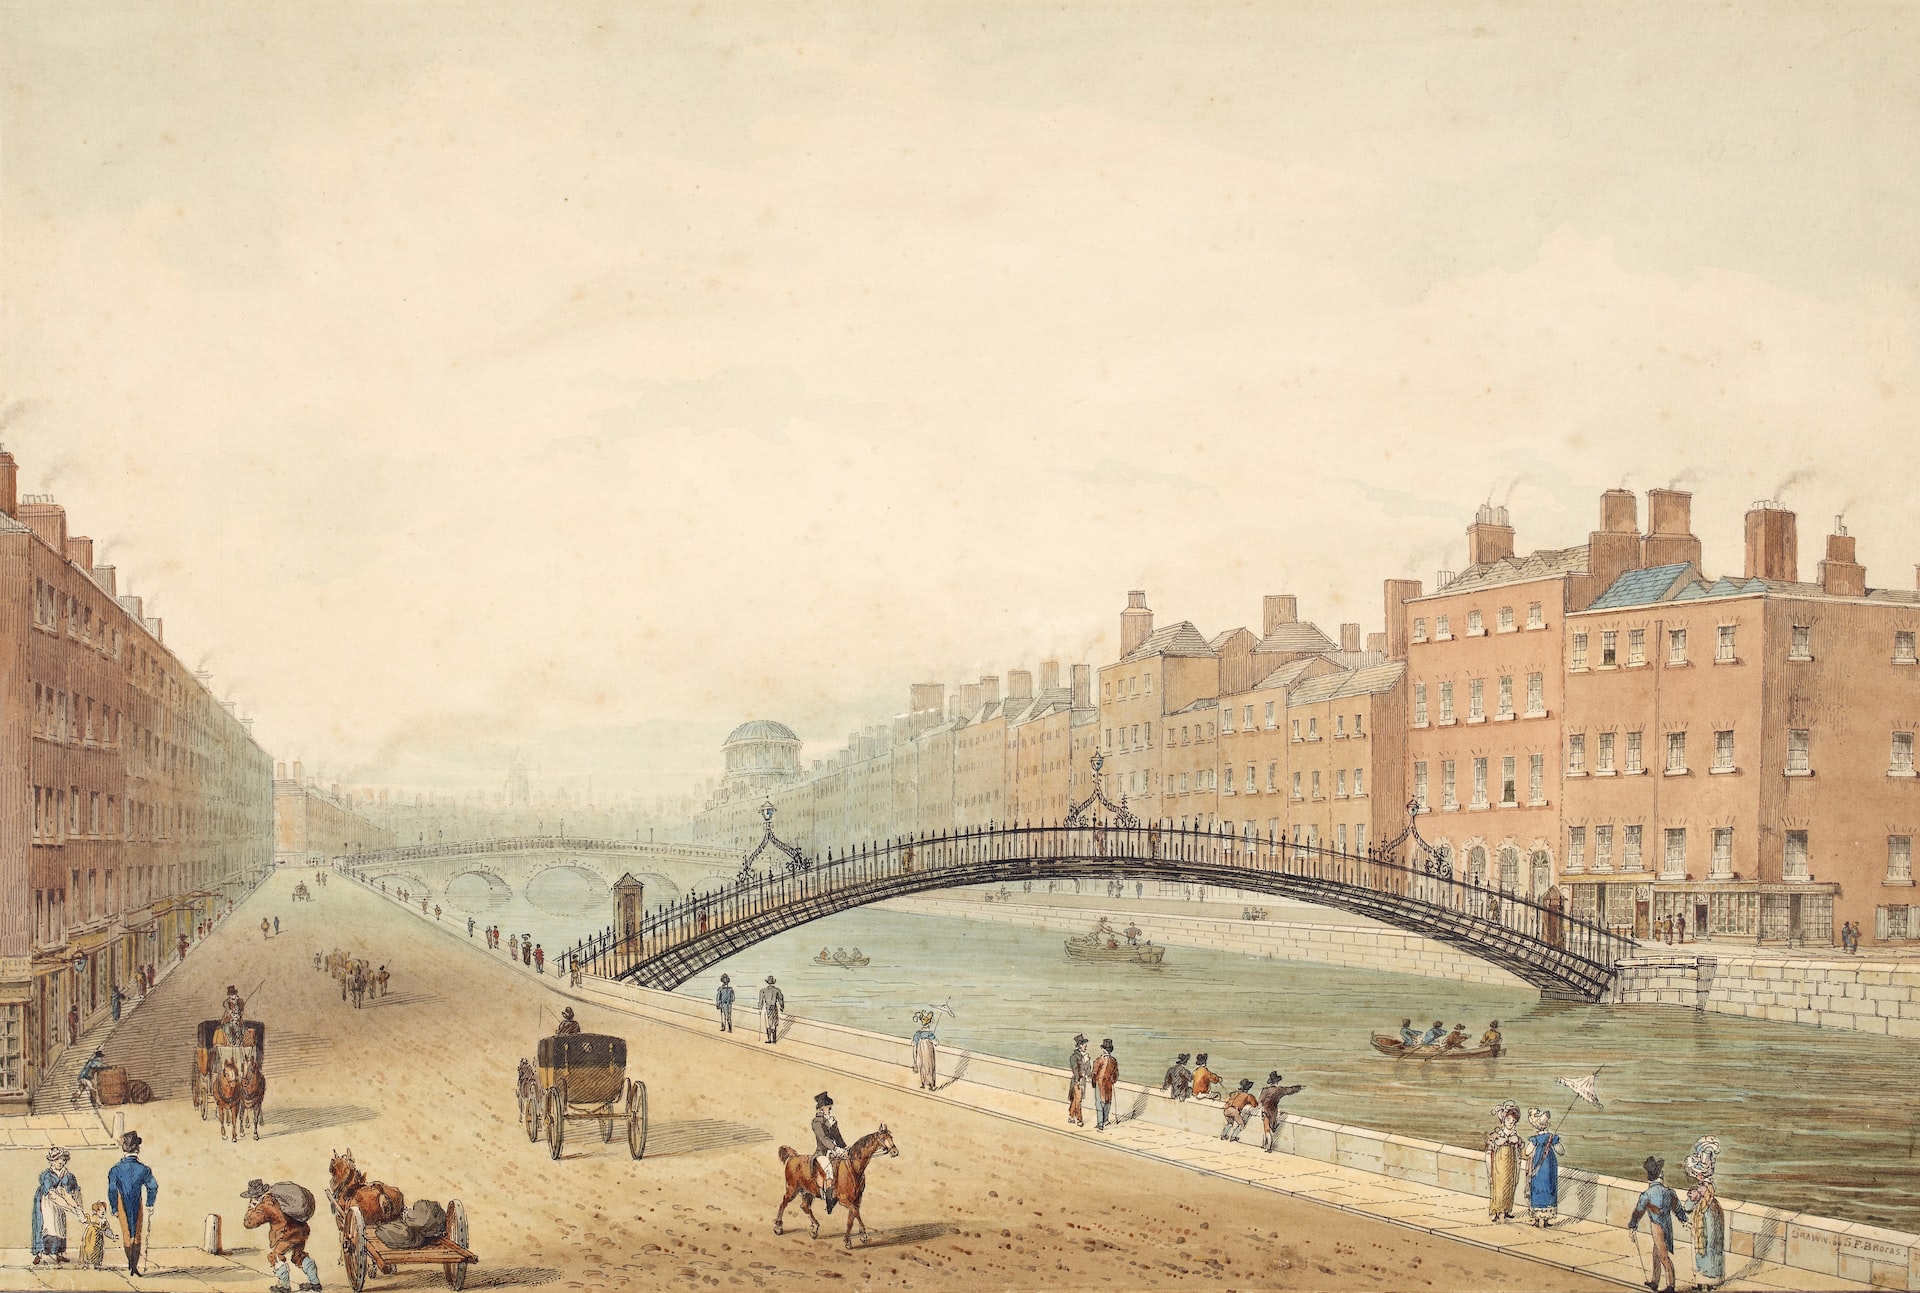 Imagen del Ha'Penny Bridge, uno de los sitios históricos en Dublín